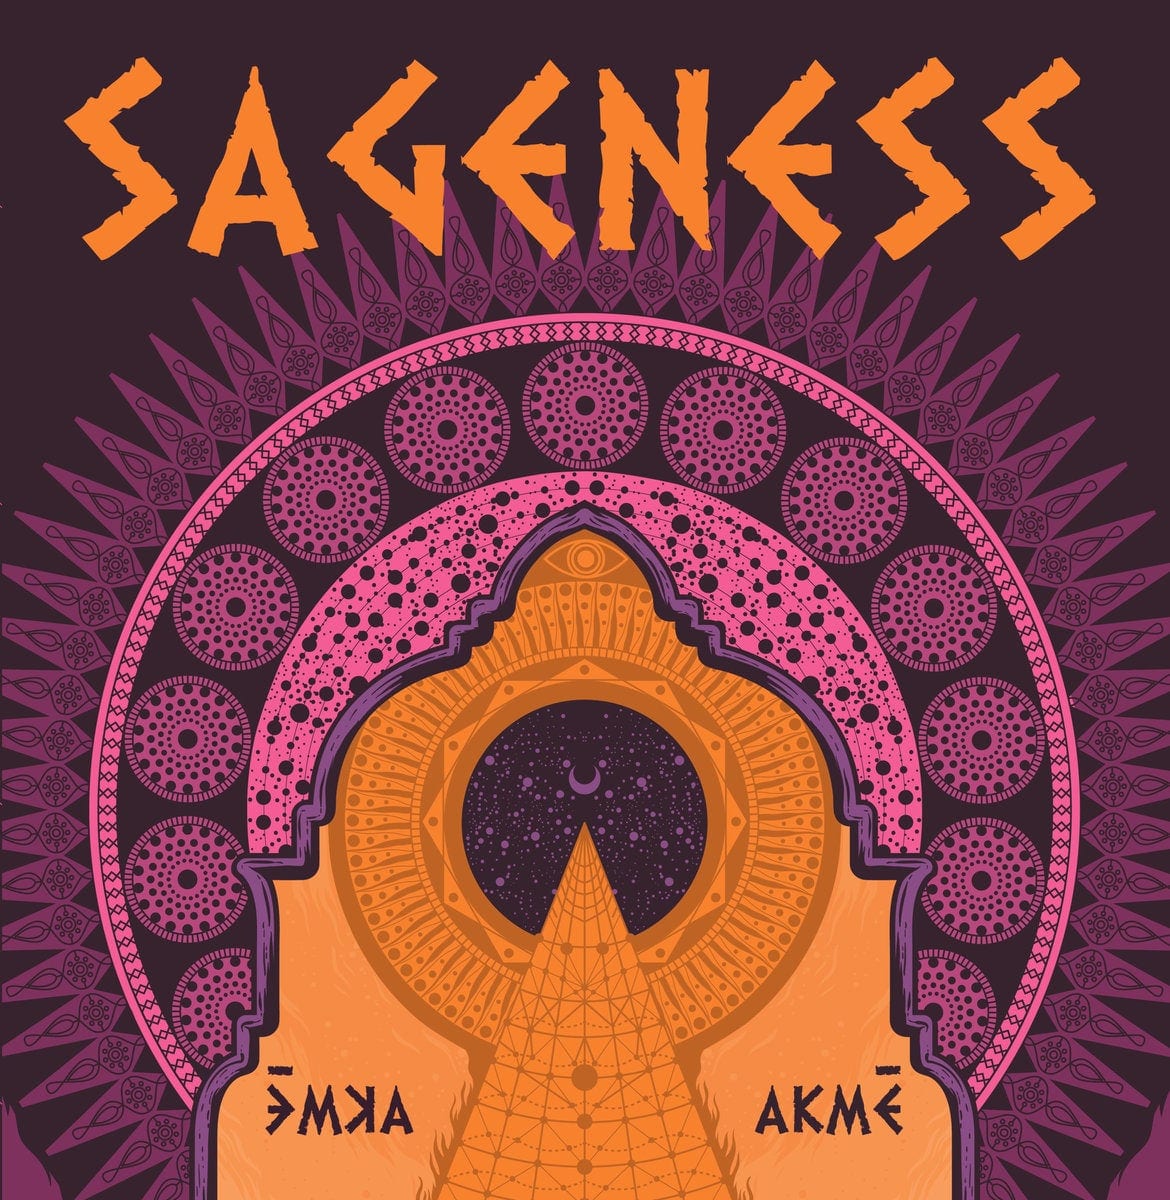 SPINDA RECORDS abre el pre-order del nuevo disco de SAGENESS